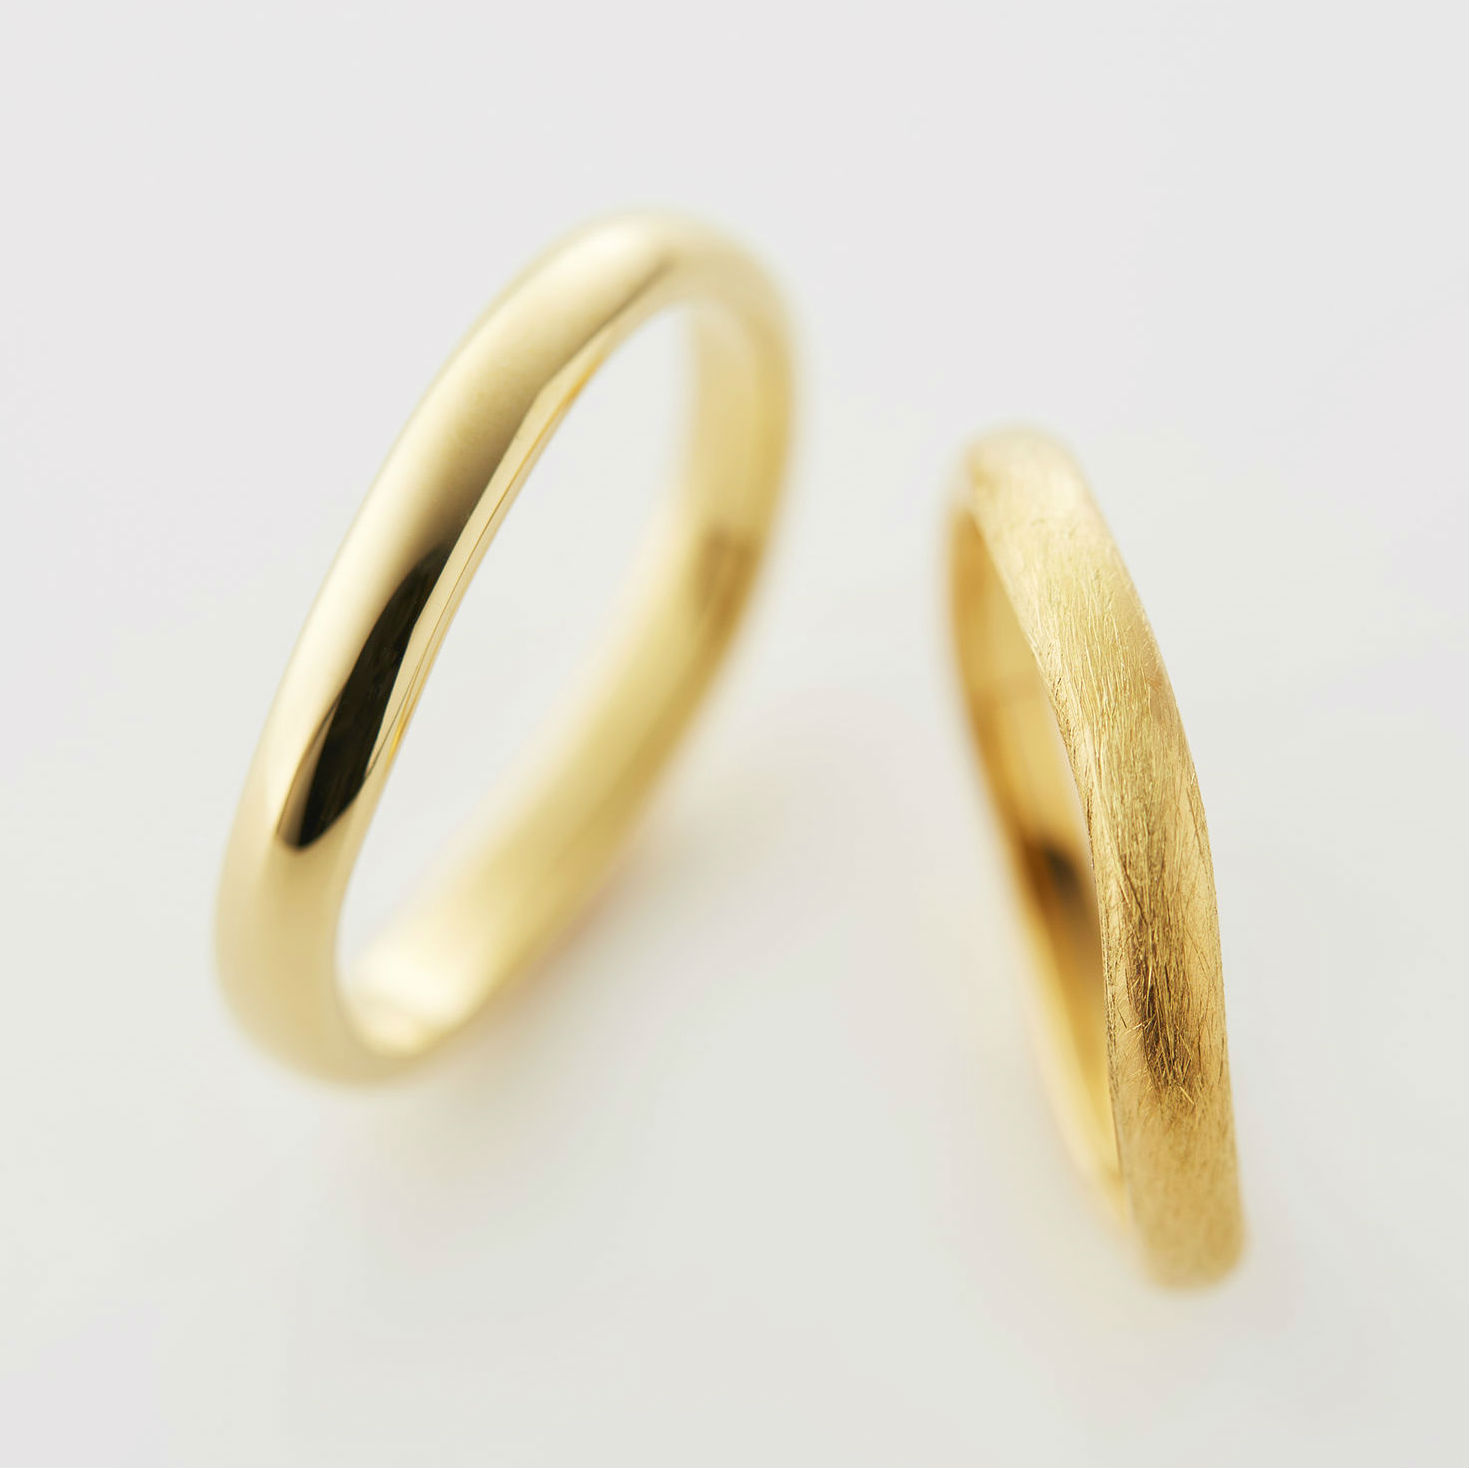 アンティーク調のおすすめデザインの結婚指輪ブランド